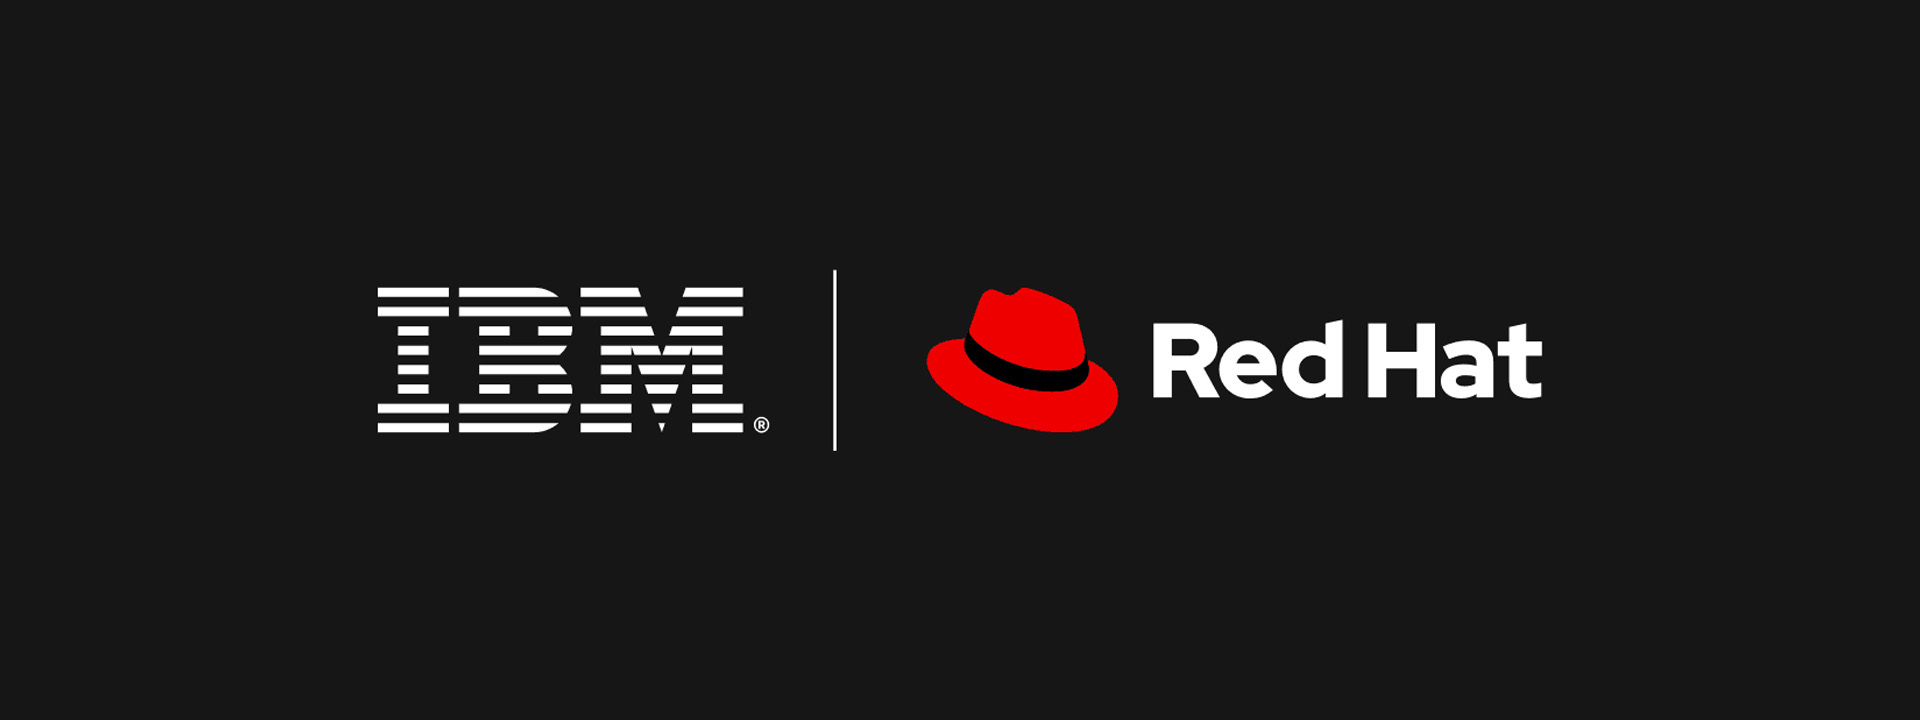 Red hat 2. Red hat Enterprise Linux 8. IBM Red hat. Red hat Enterprise Linux. Red hat компания.